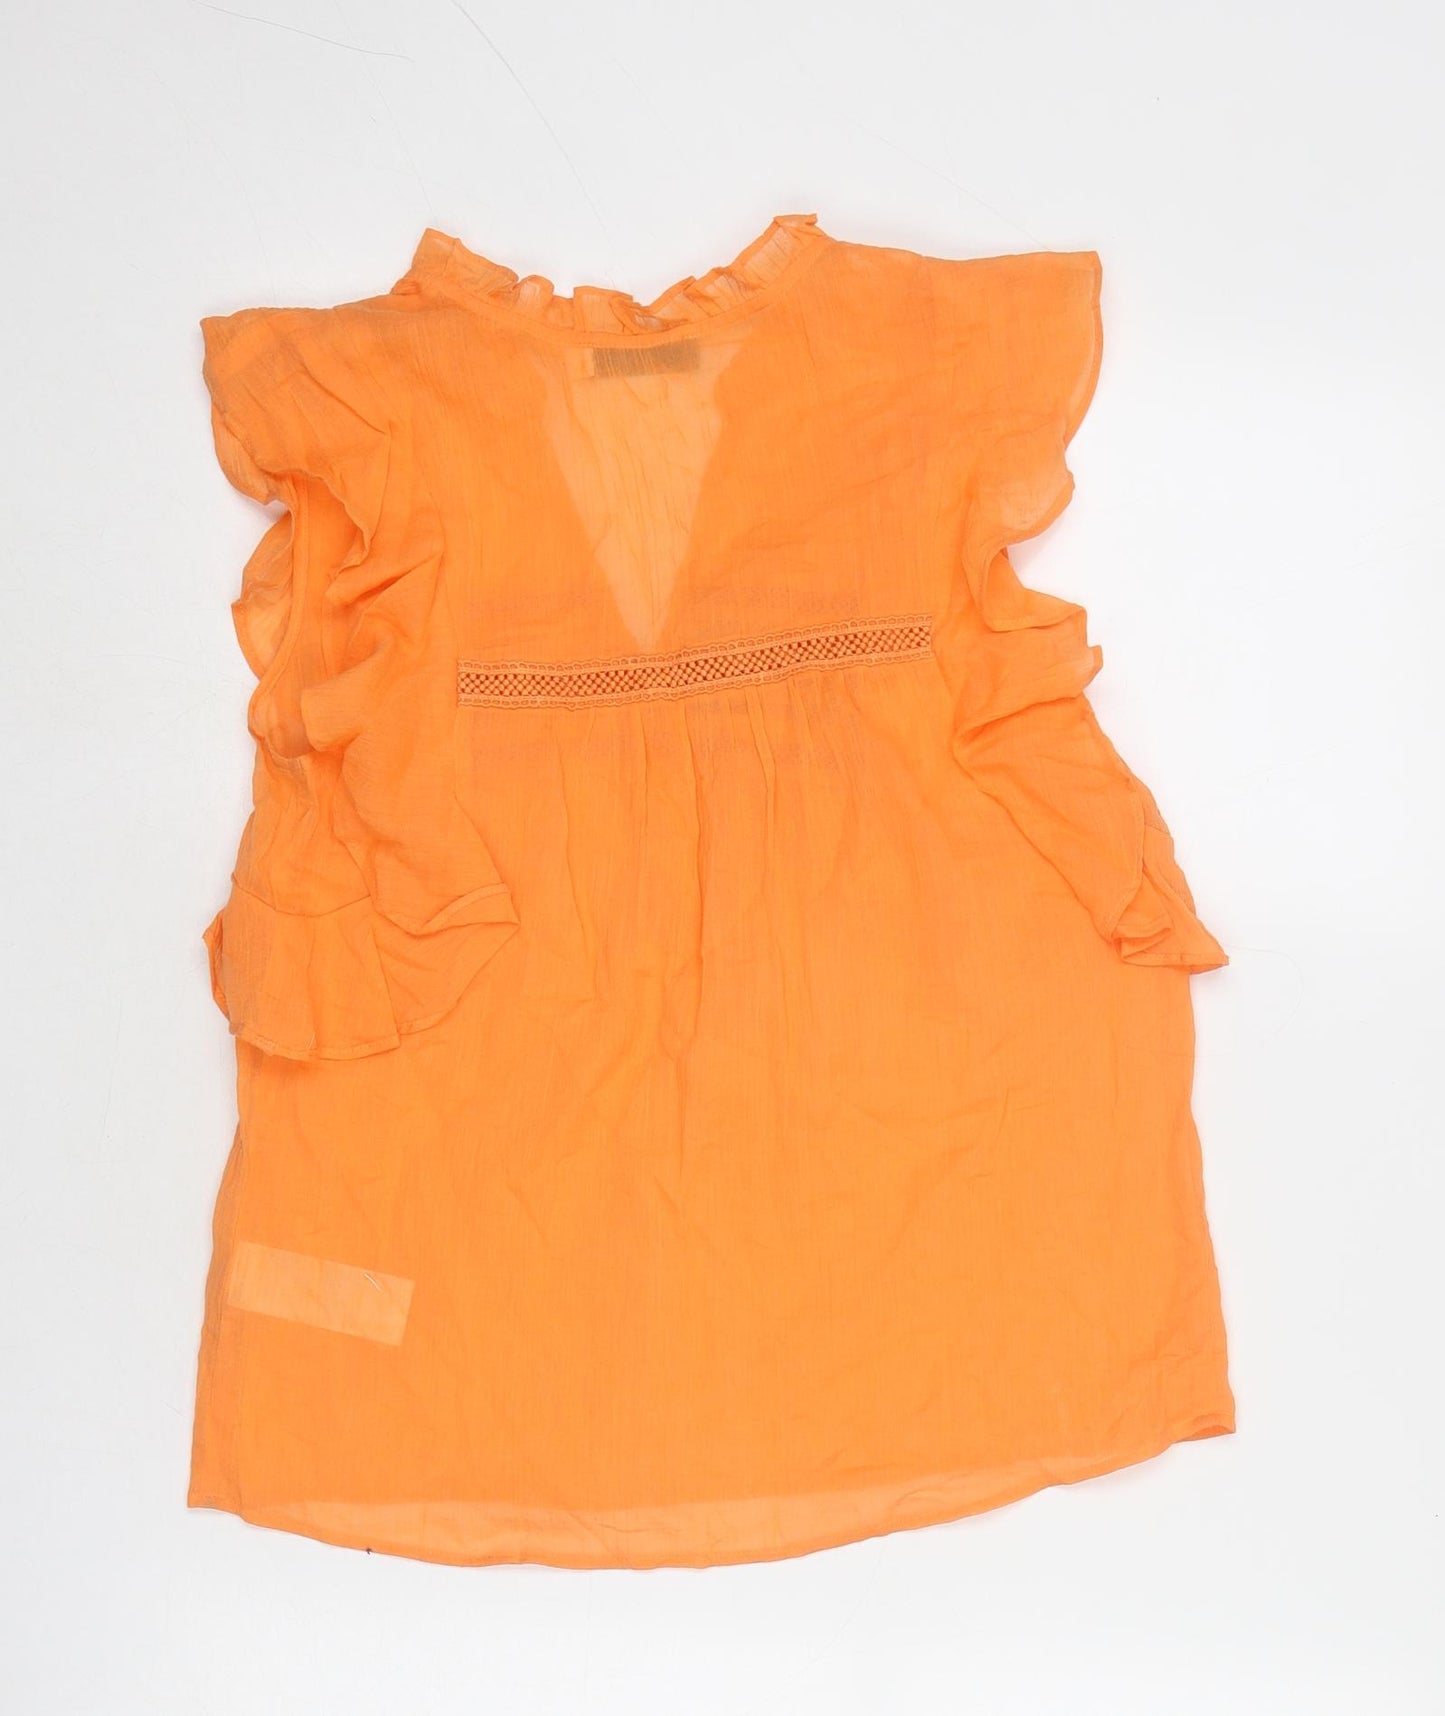 Mint Velvet Womens Orange Cotton Basic Blouse Size 6 V-Neck